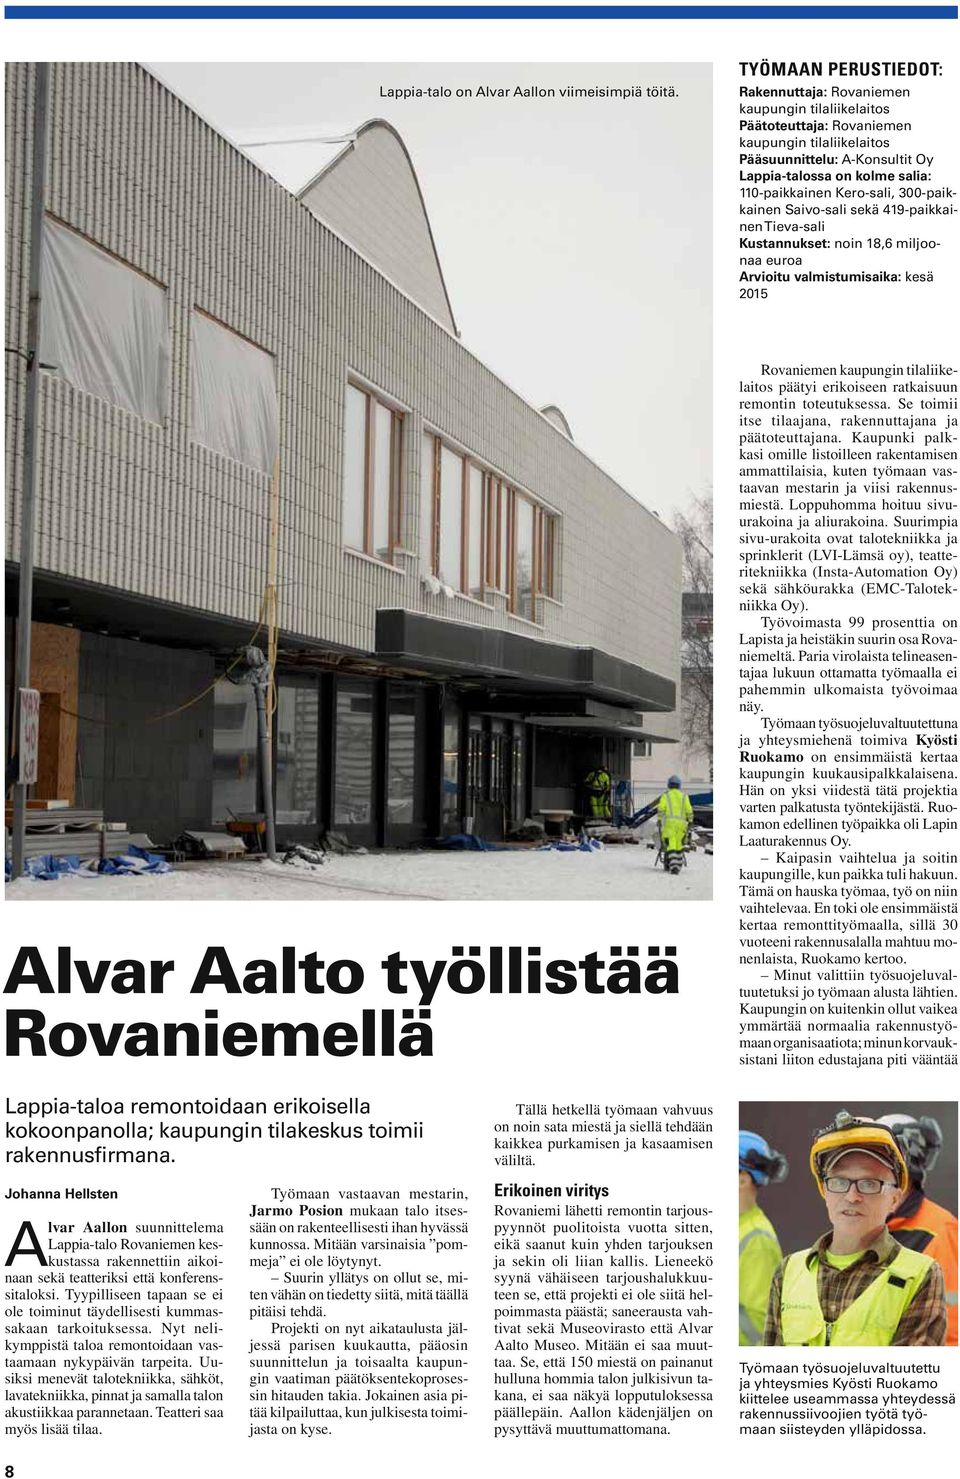 110-paikkainen Kero-sali, 300-paikkainen Saivo-sali sekä 419-paikkainen Tieva-sali Kustannukset: noin 18,6 miljoonaa euroa Arvioitu valmistumisaika: kesä 2015 Alvar Aalto työllistää Rovaniemellä